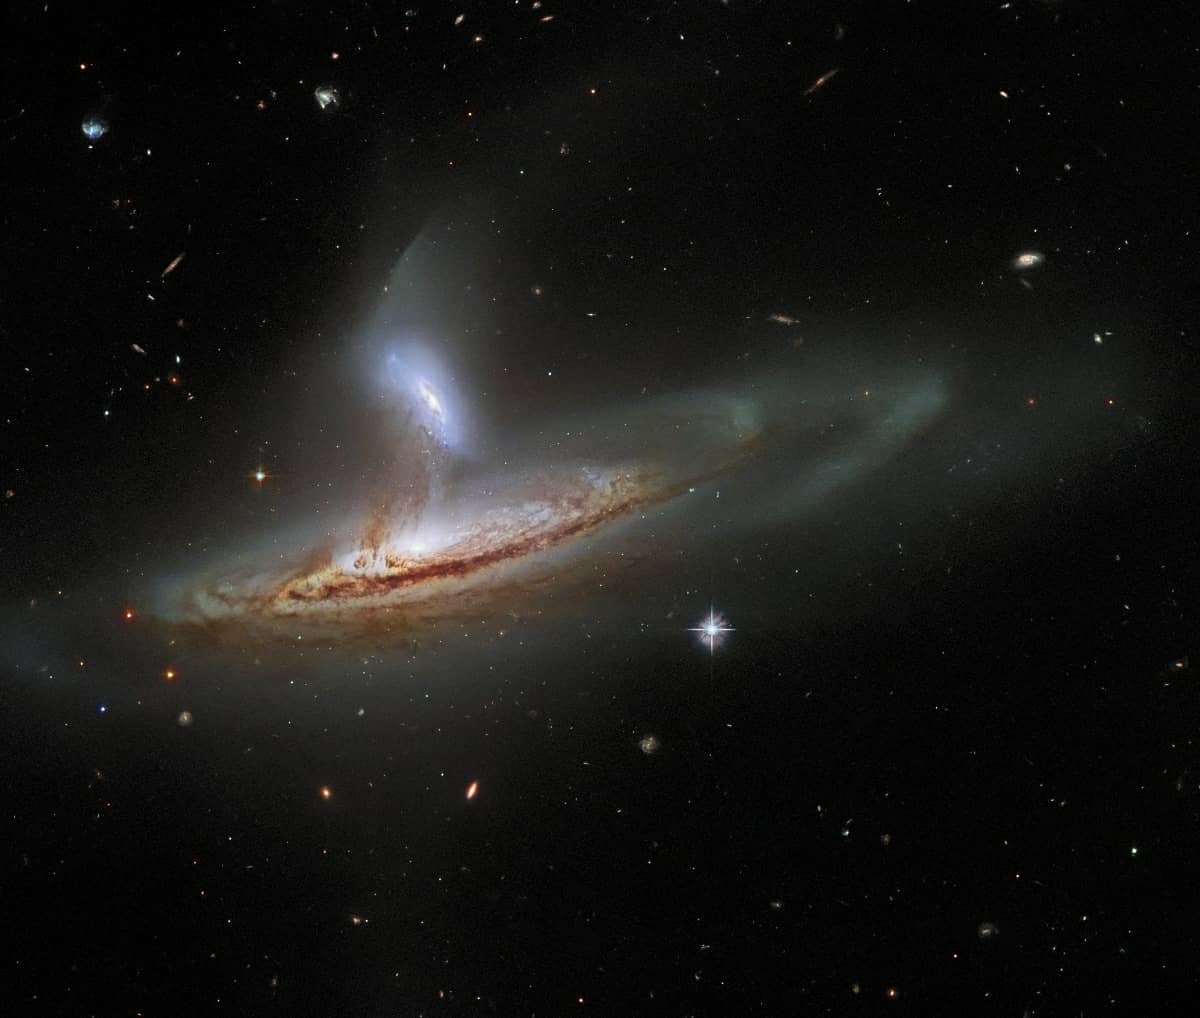 Hubble continua a maravilhar com foto de interação cósmica